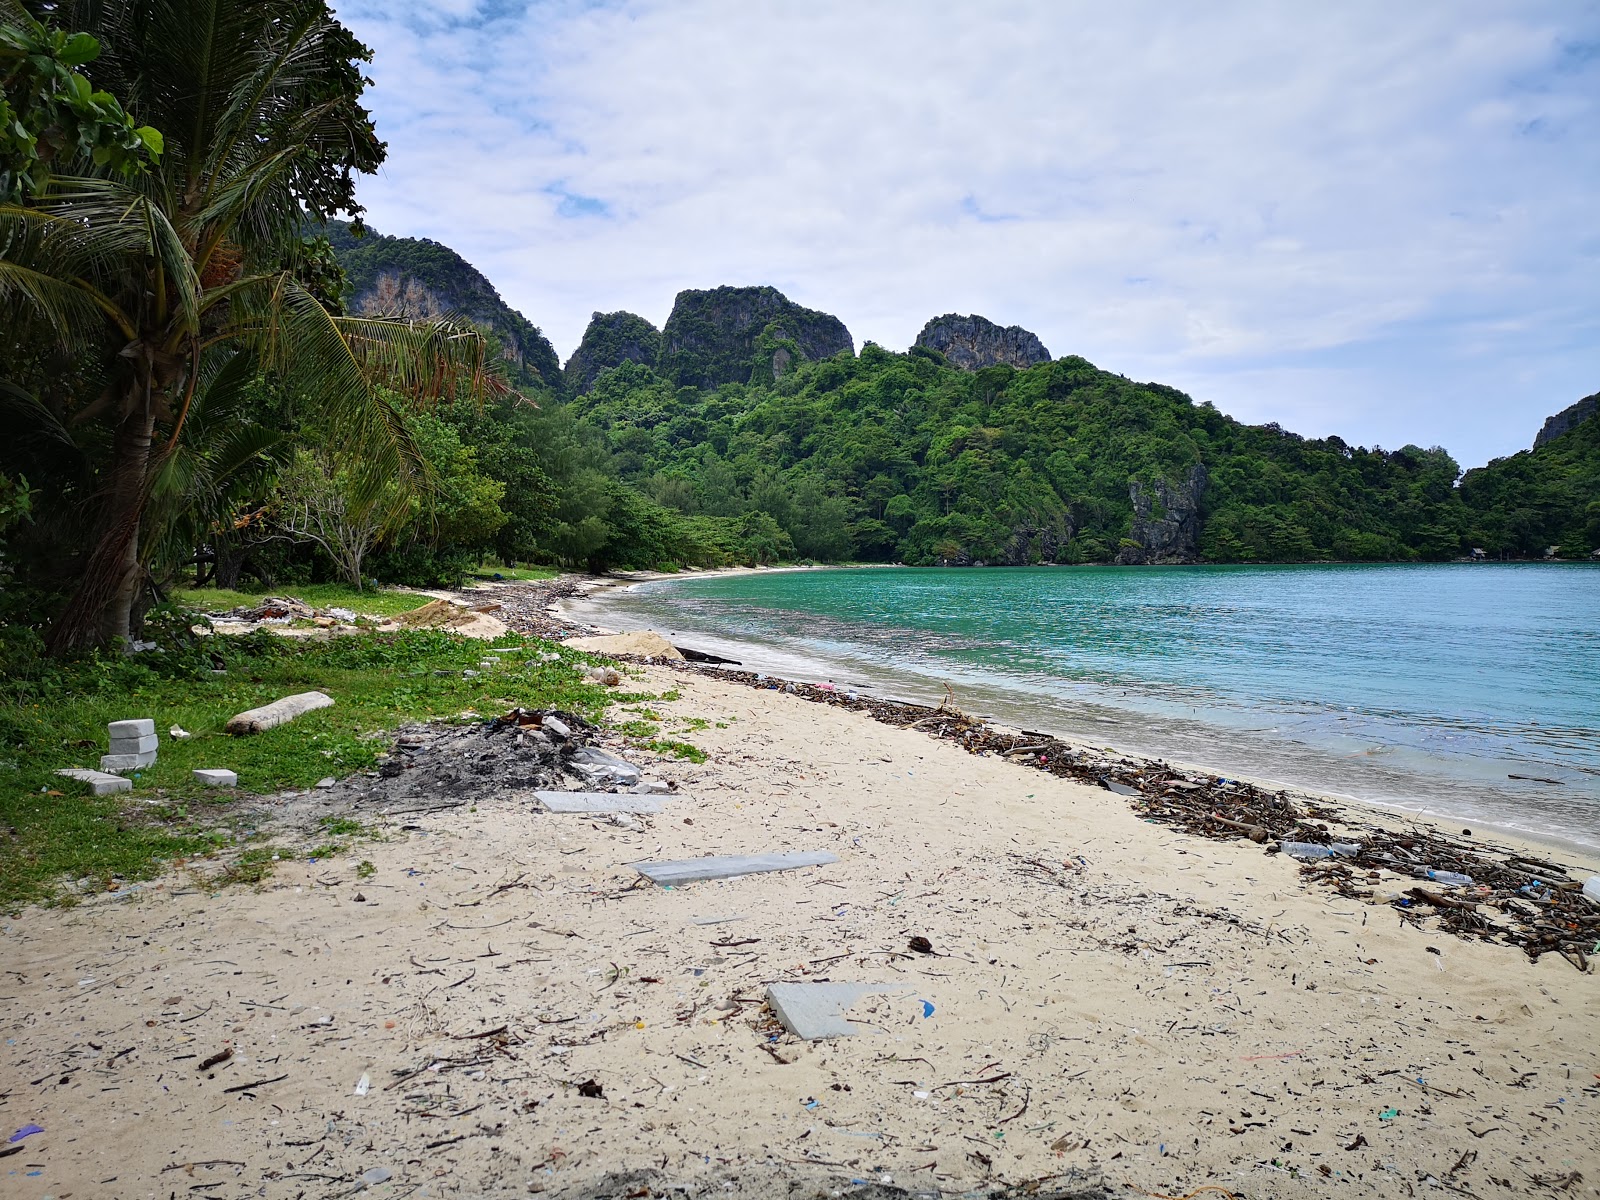 Photo de Loh Lana Bay Beach - endroit populaire parmi les connaisseurs de la détente